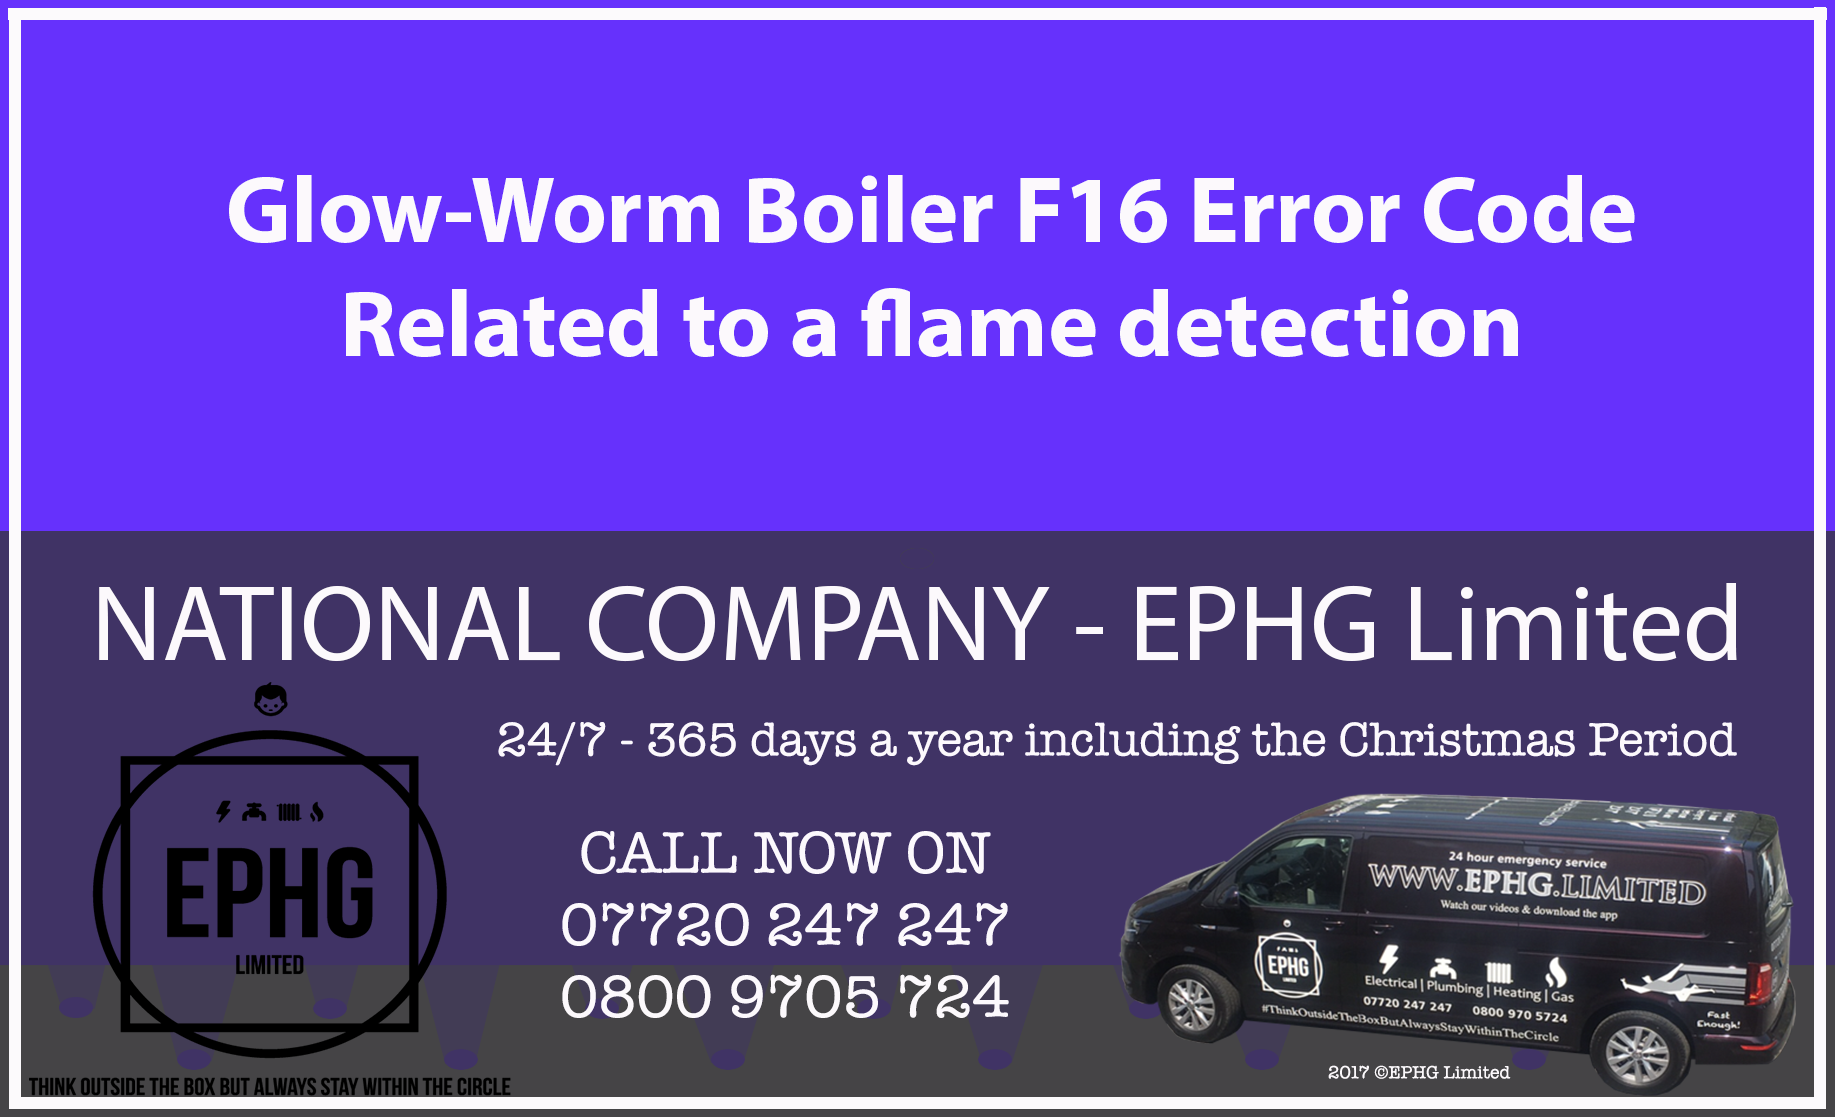 Glow-Worm boiler error code F16